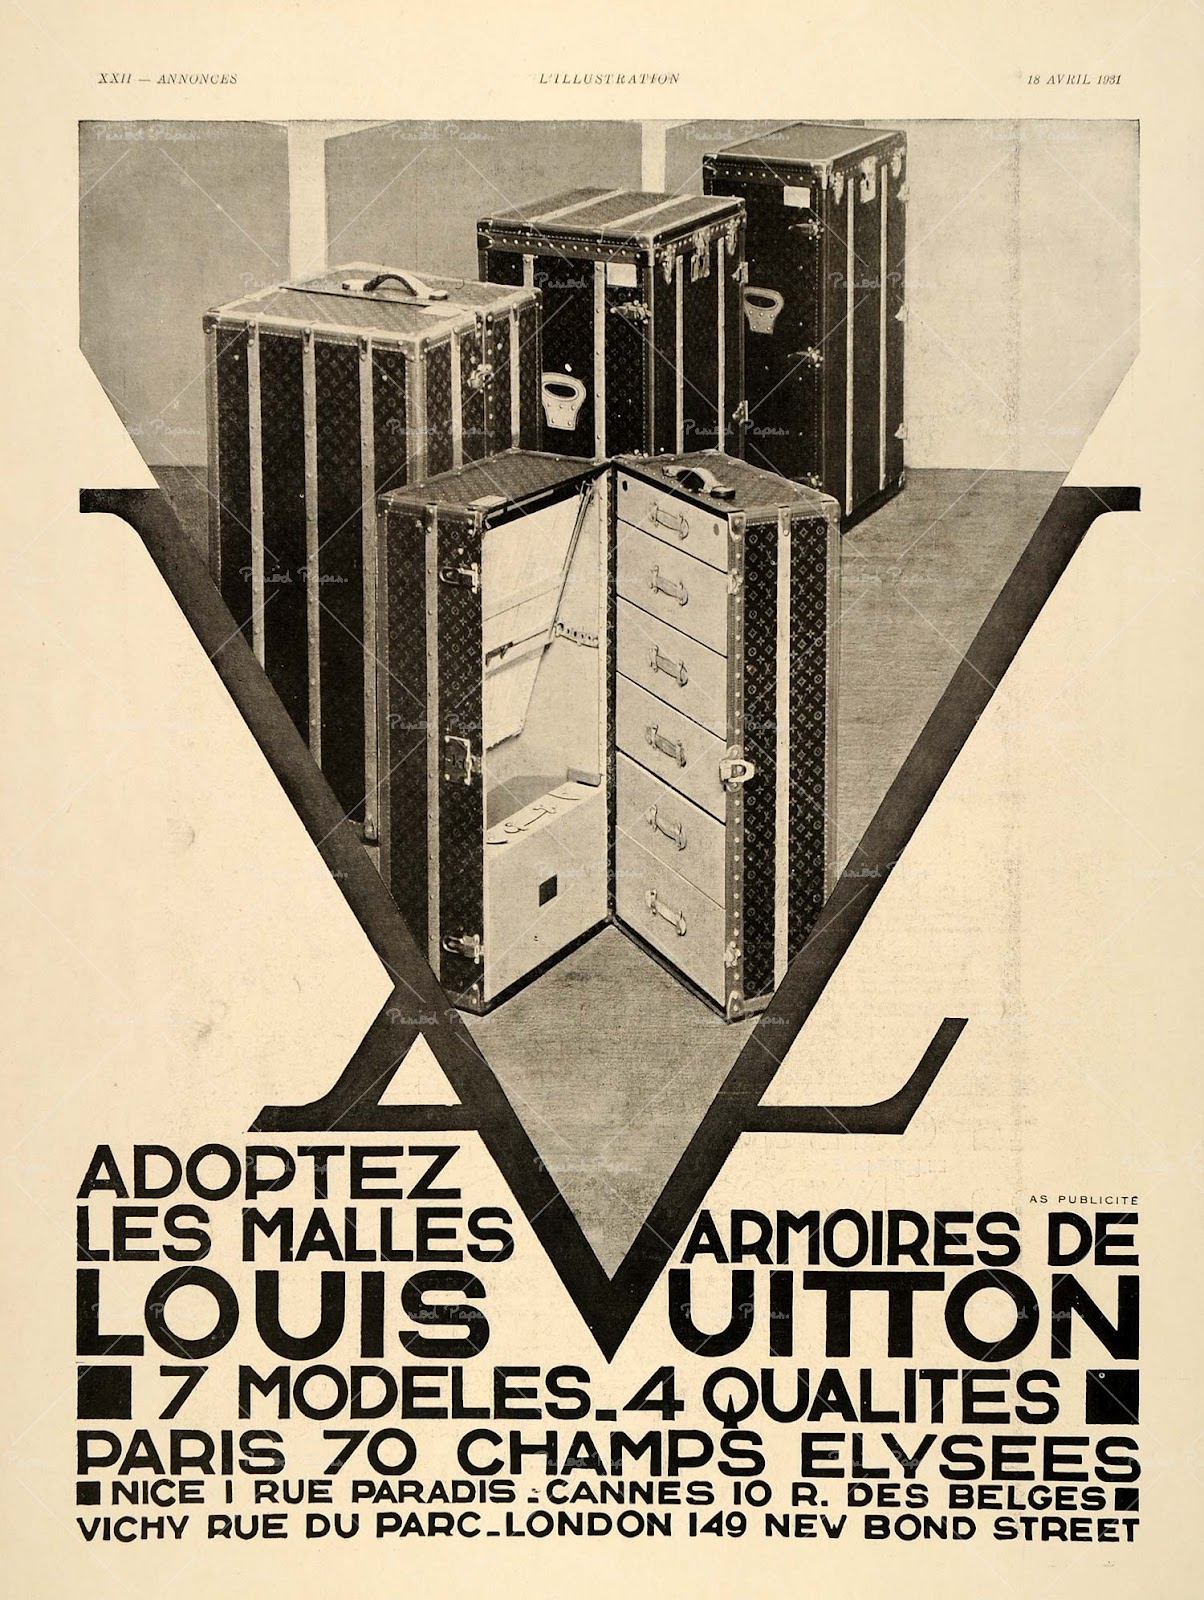 Vanity case Louis Vuitton with French flag - Les Puces de Paris